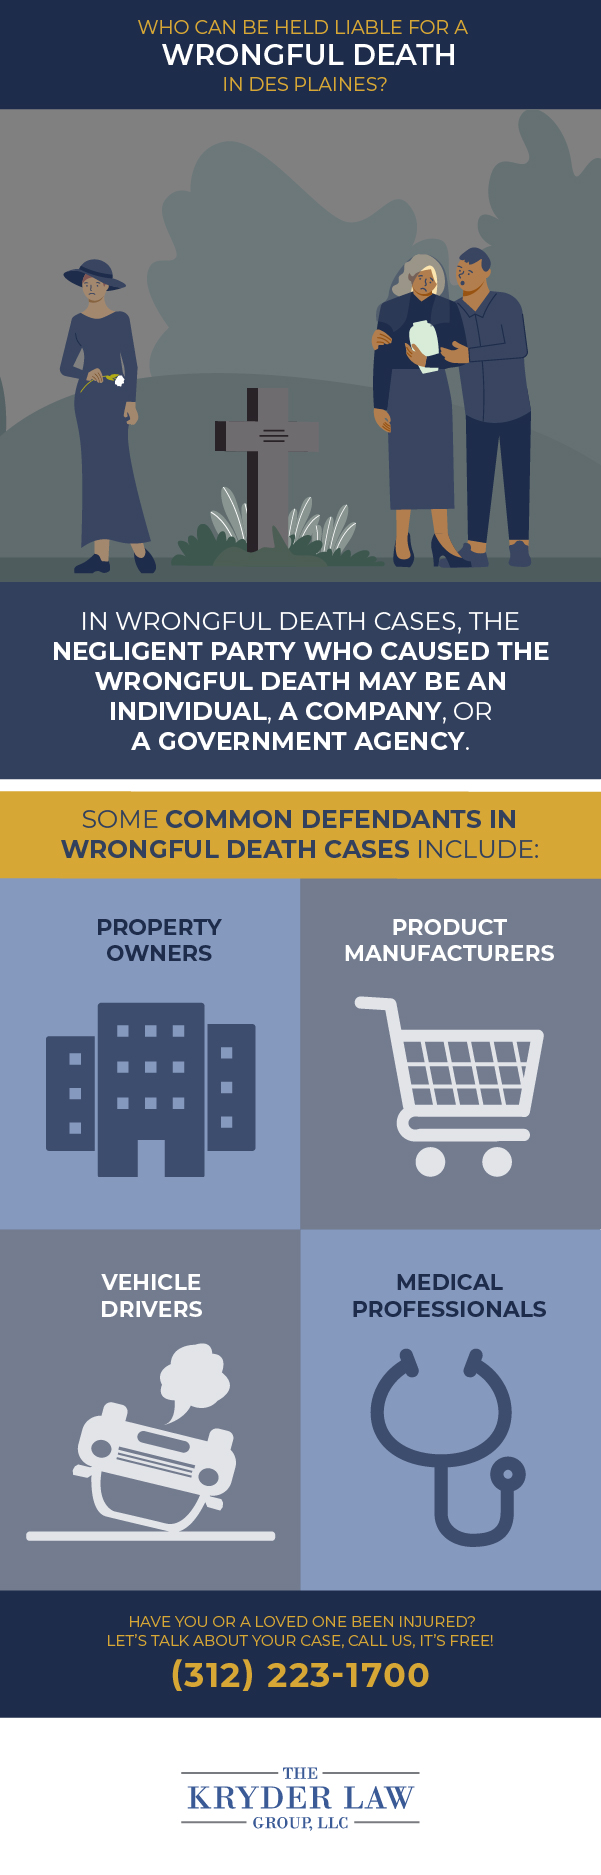 Infografía sobre quién puede ser considerado responsable por una muerte por negligencia en Des Plaines